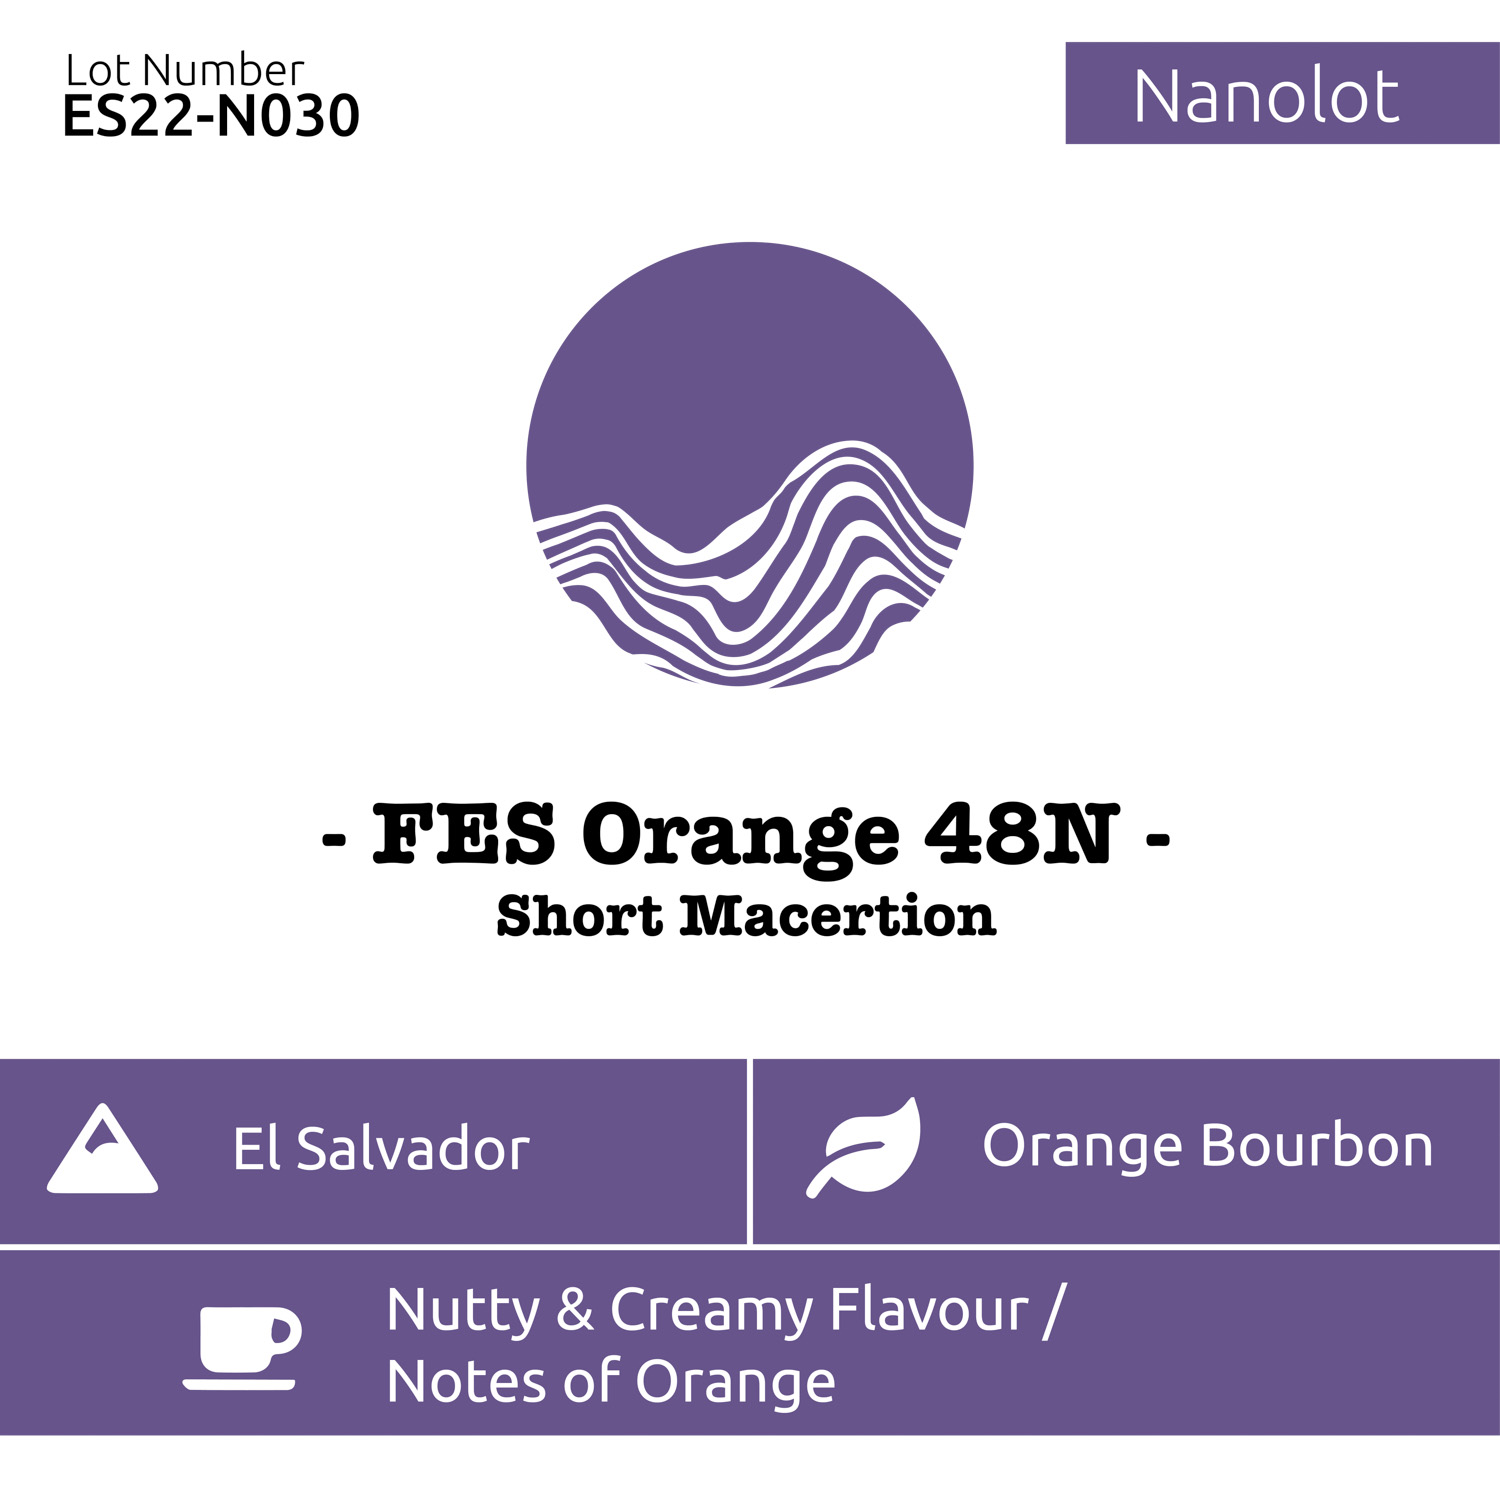 fes orange 48n - short maceration